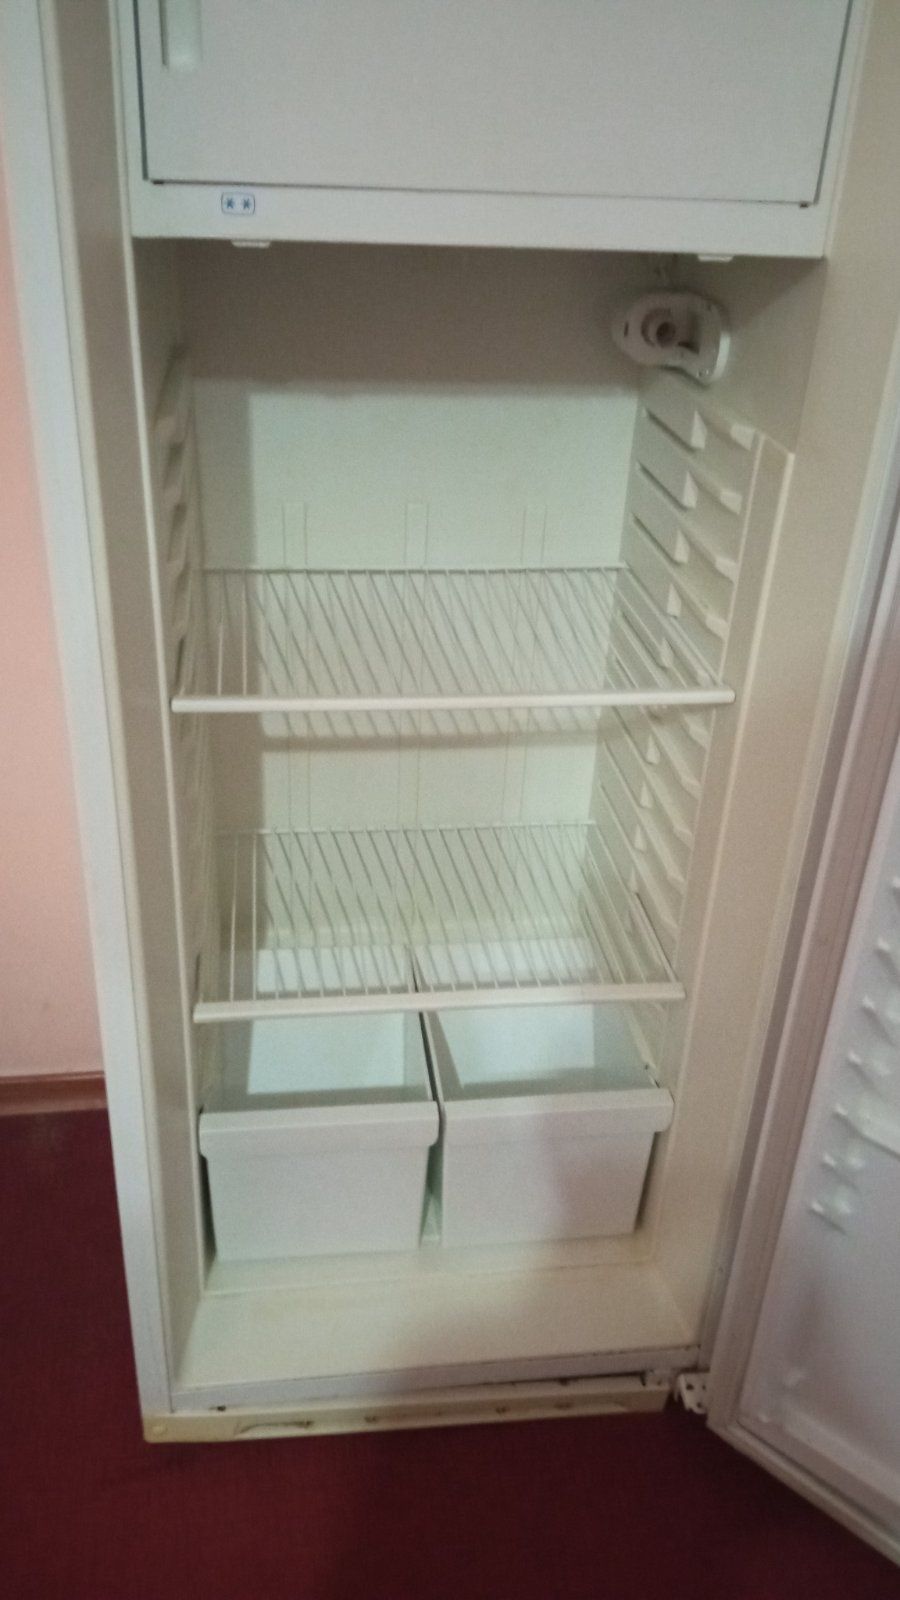 Продам бу холодильник Днепр